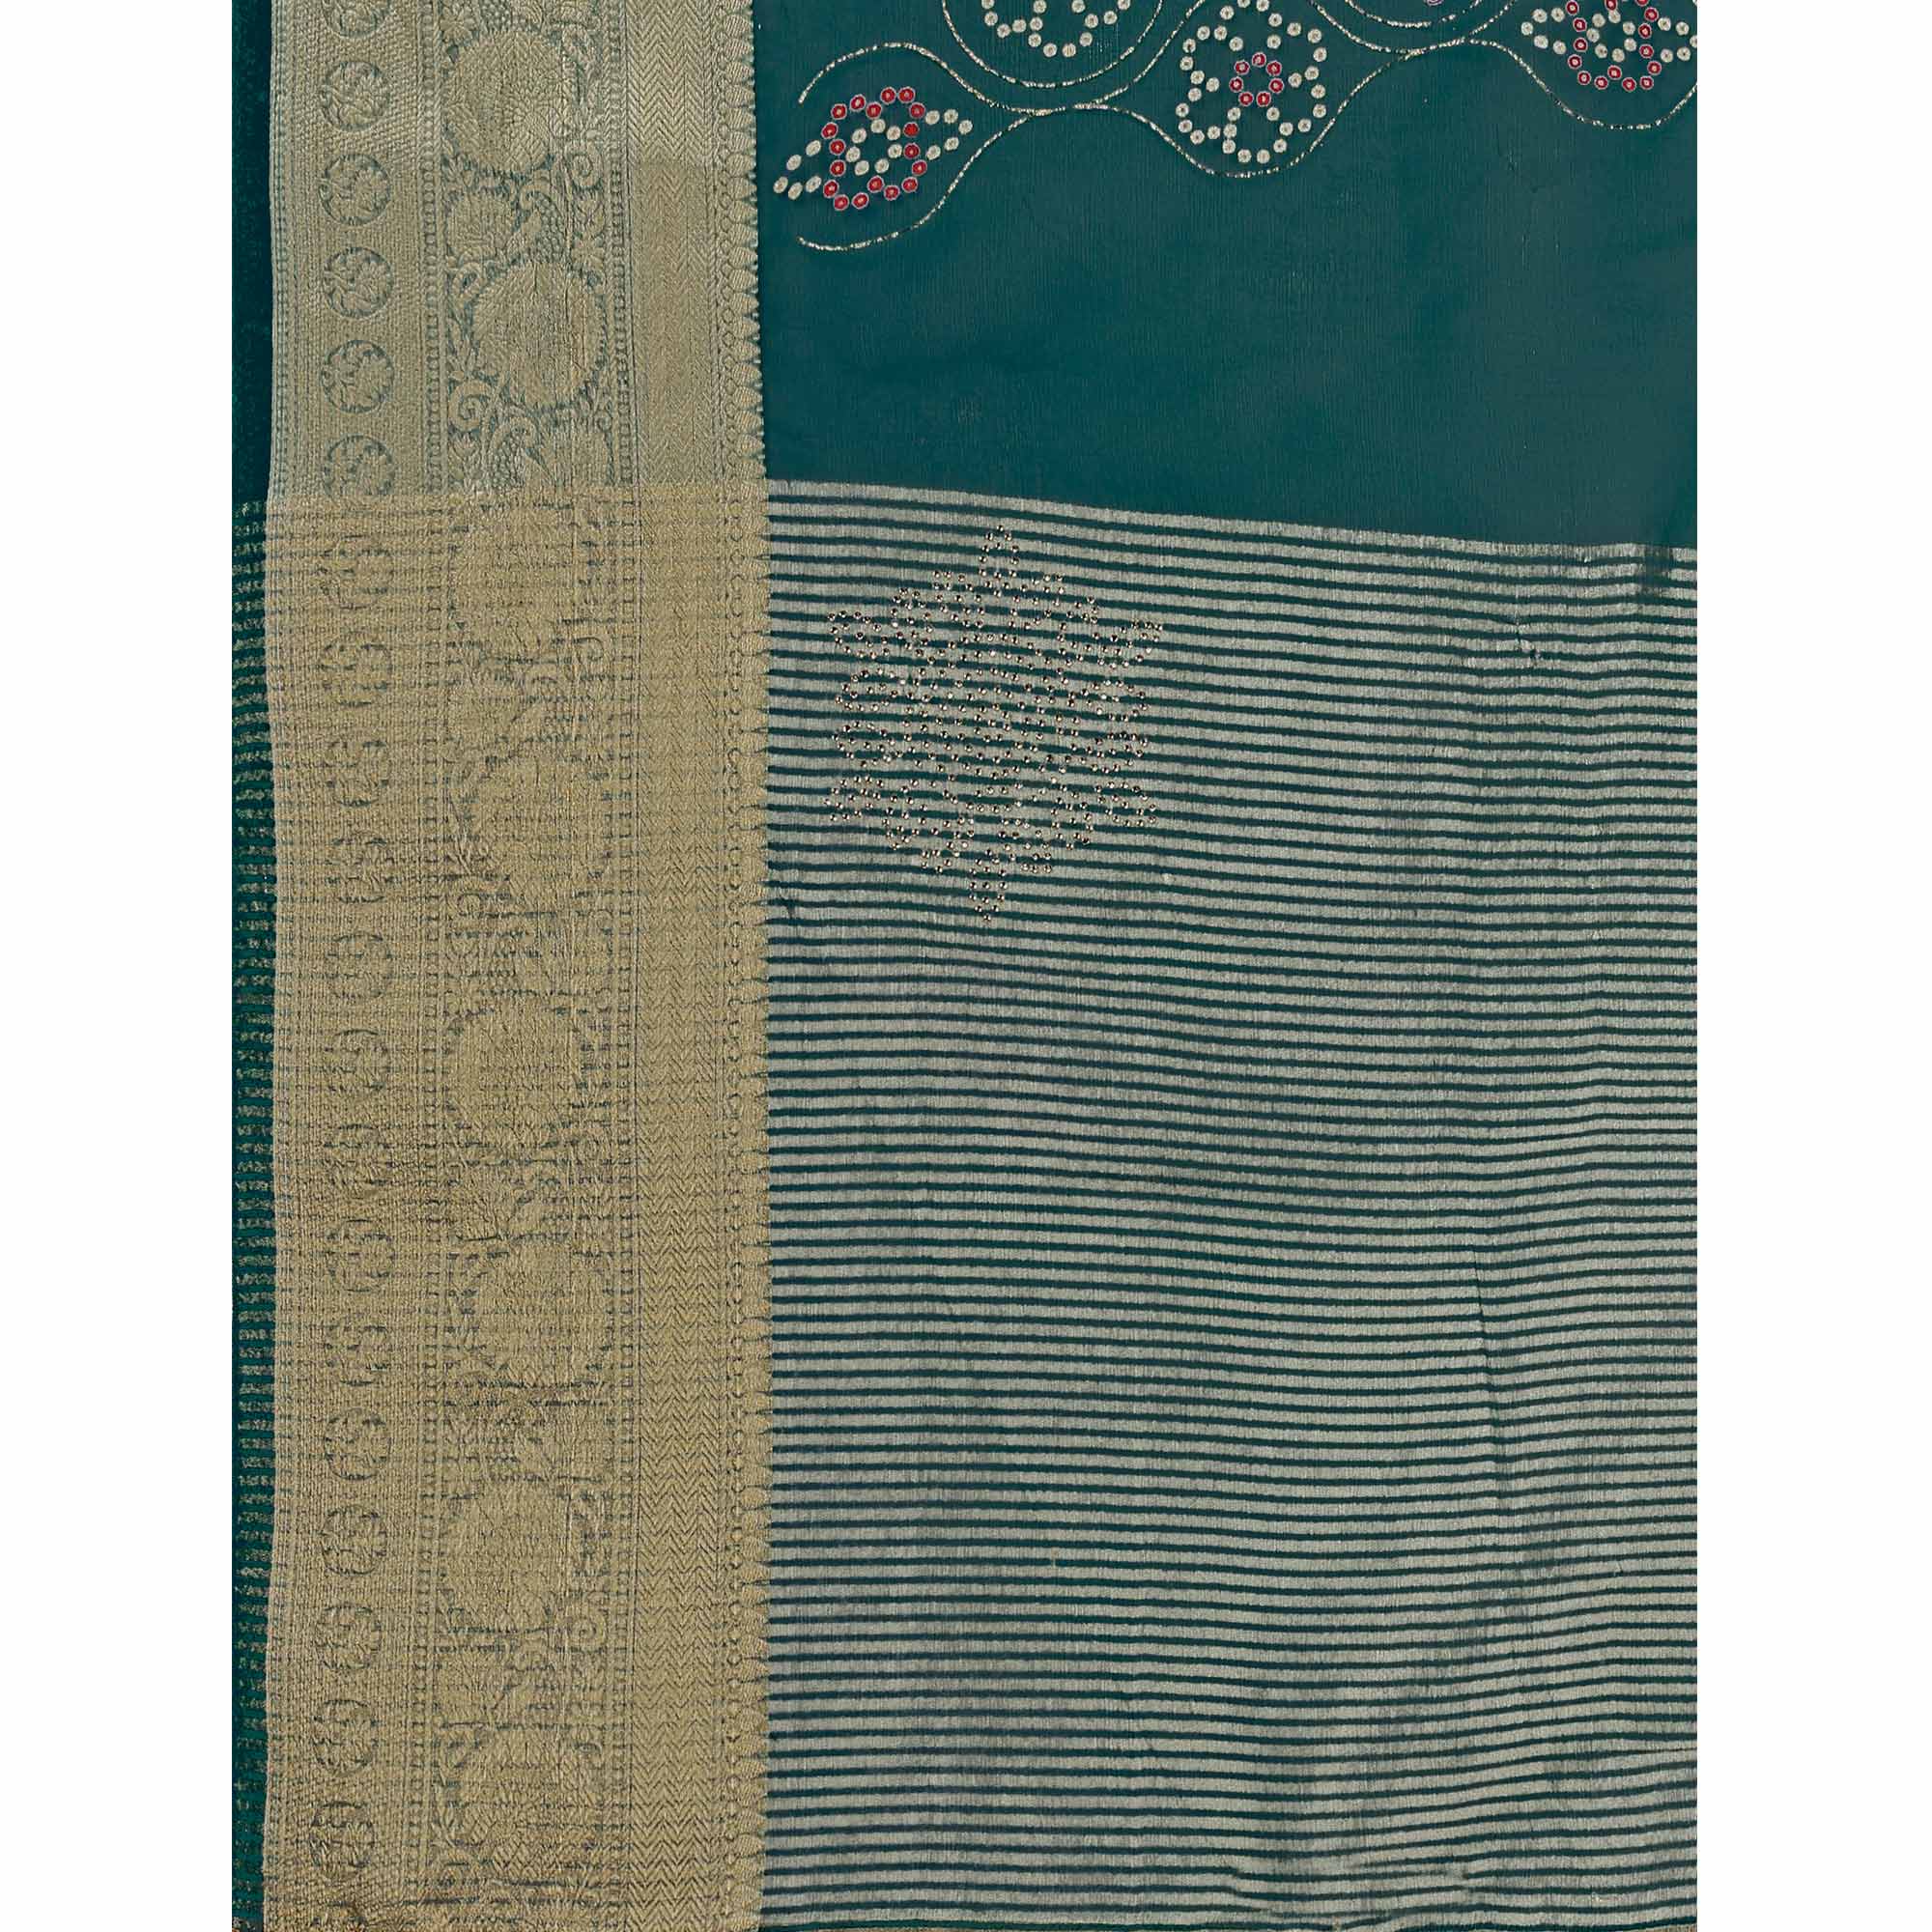 Teal Bandhani Printed Organza Saree With Woven Border